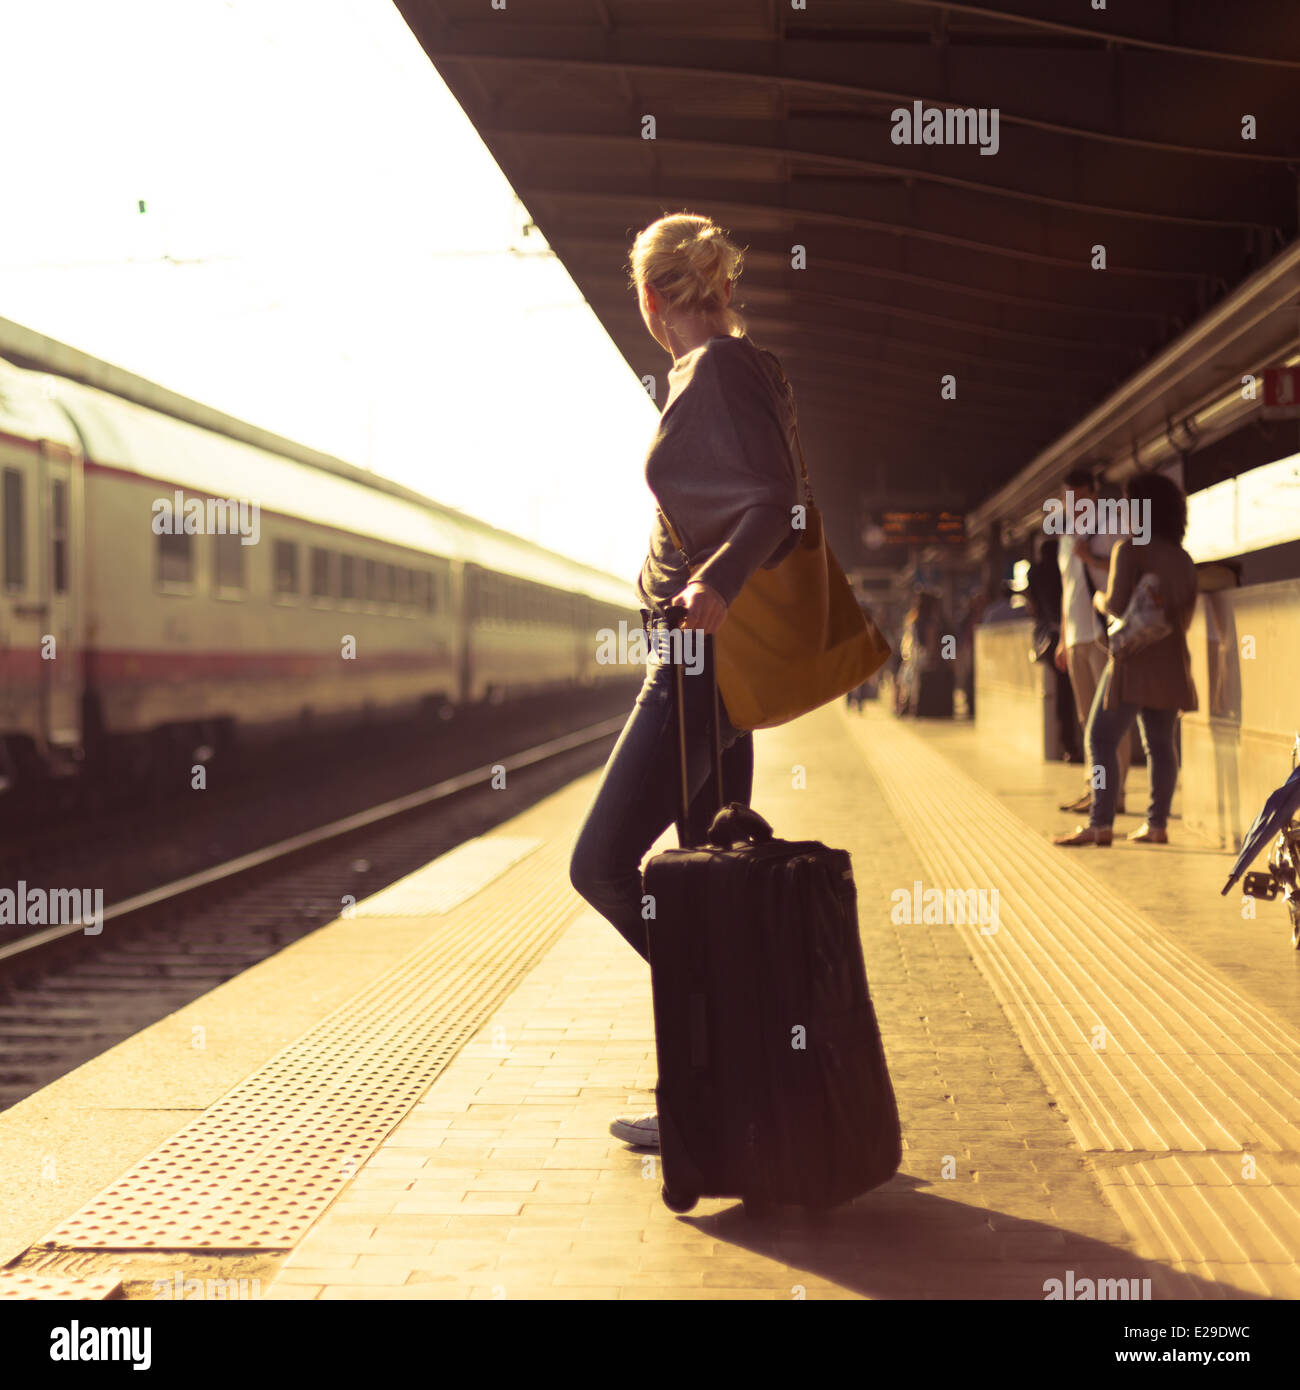 Помнится уезжая. Девушка на вокзале с чемоданом. Девушка на перроне вокзала. Фотосессия на вокзале с чемоданом. Девушка с чемоданом уходит.